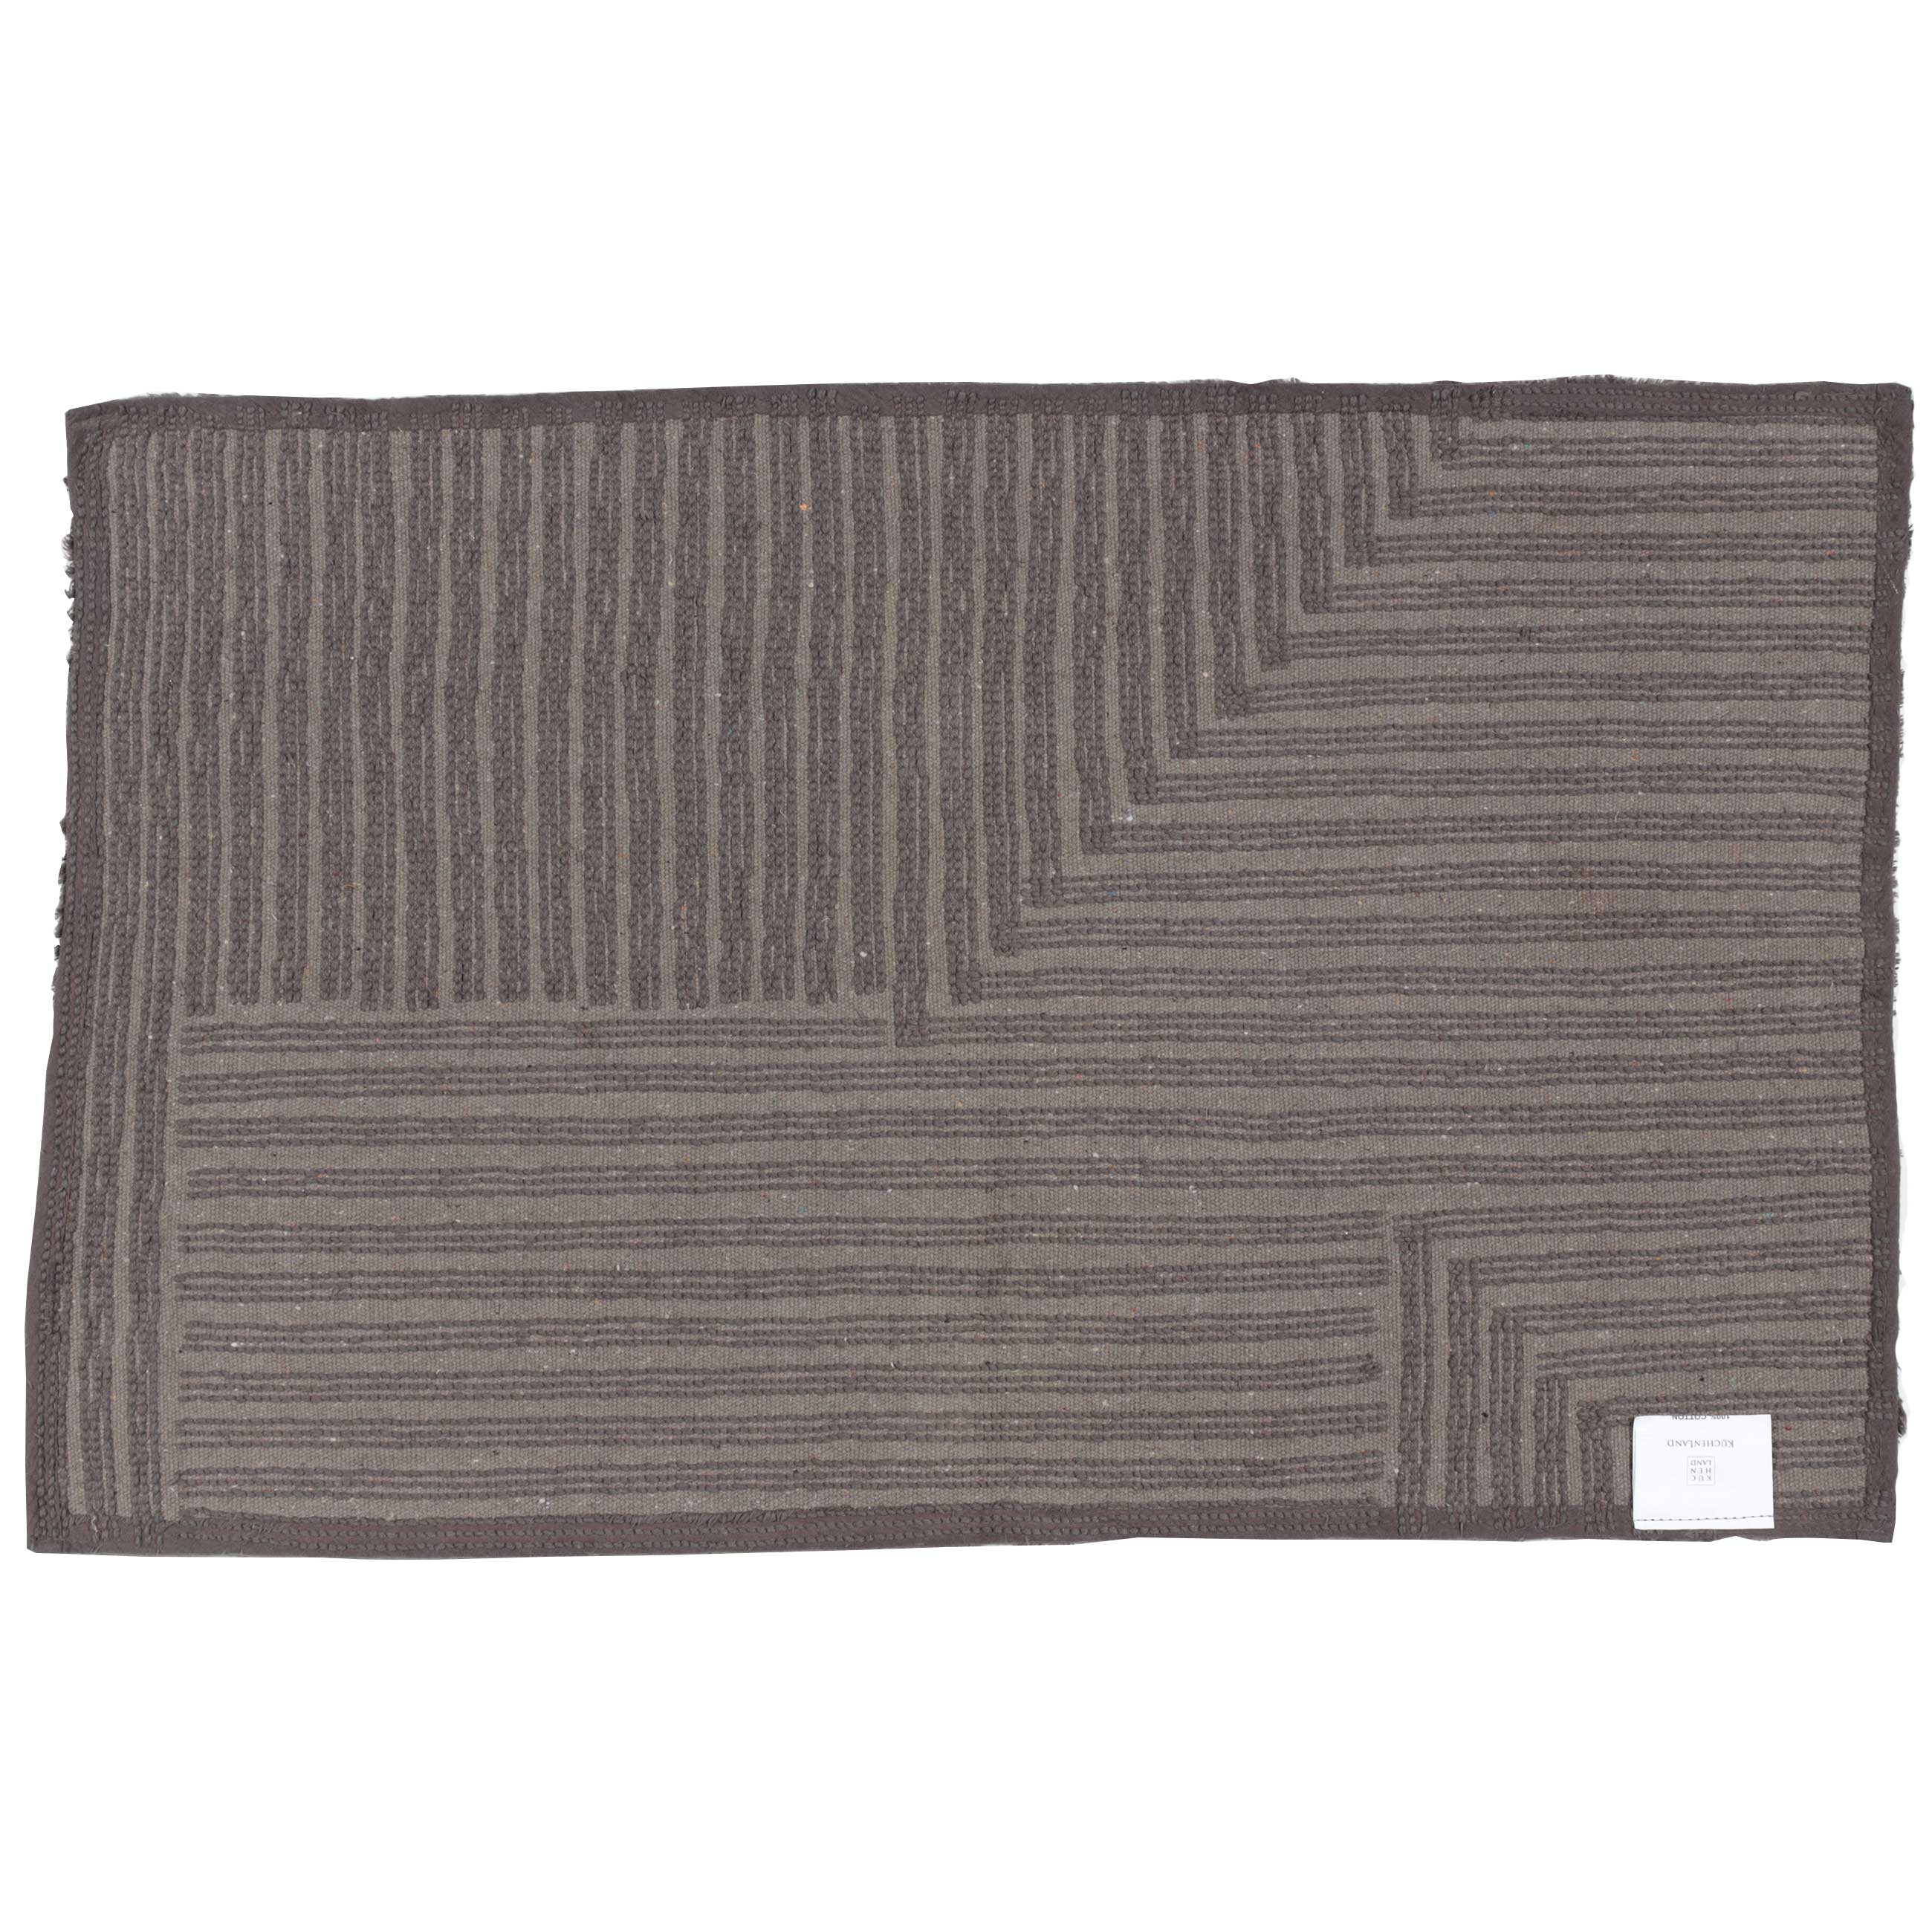 Коврик, 50х80 см, хлопок, серо-коричневый, Геометрия, Cage pattern изображение № 3